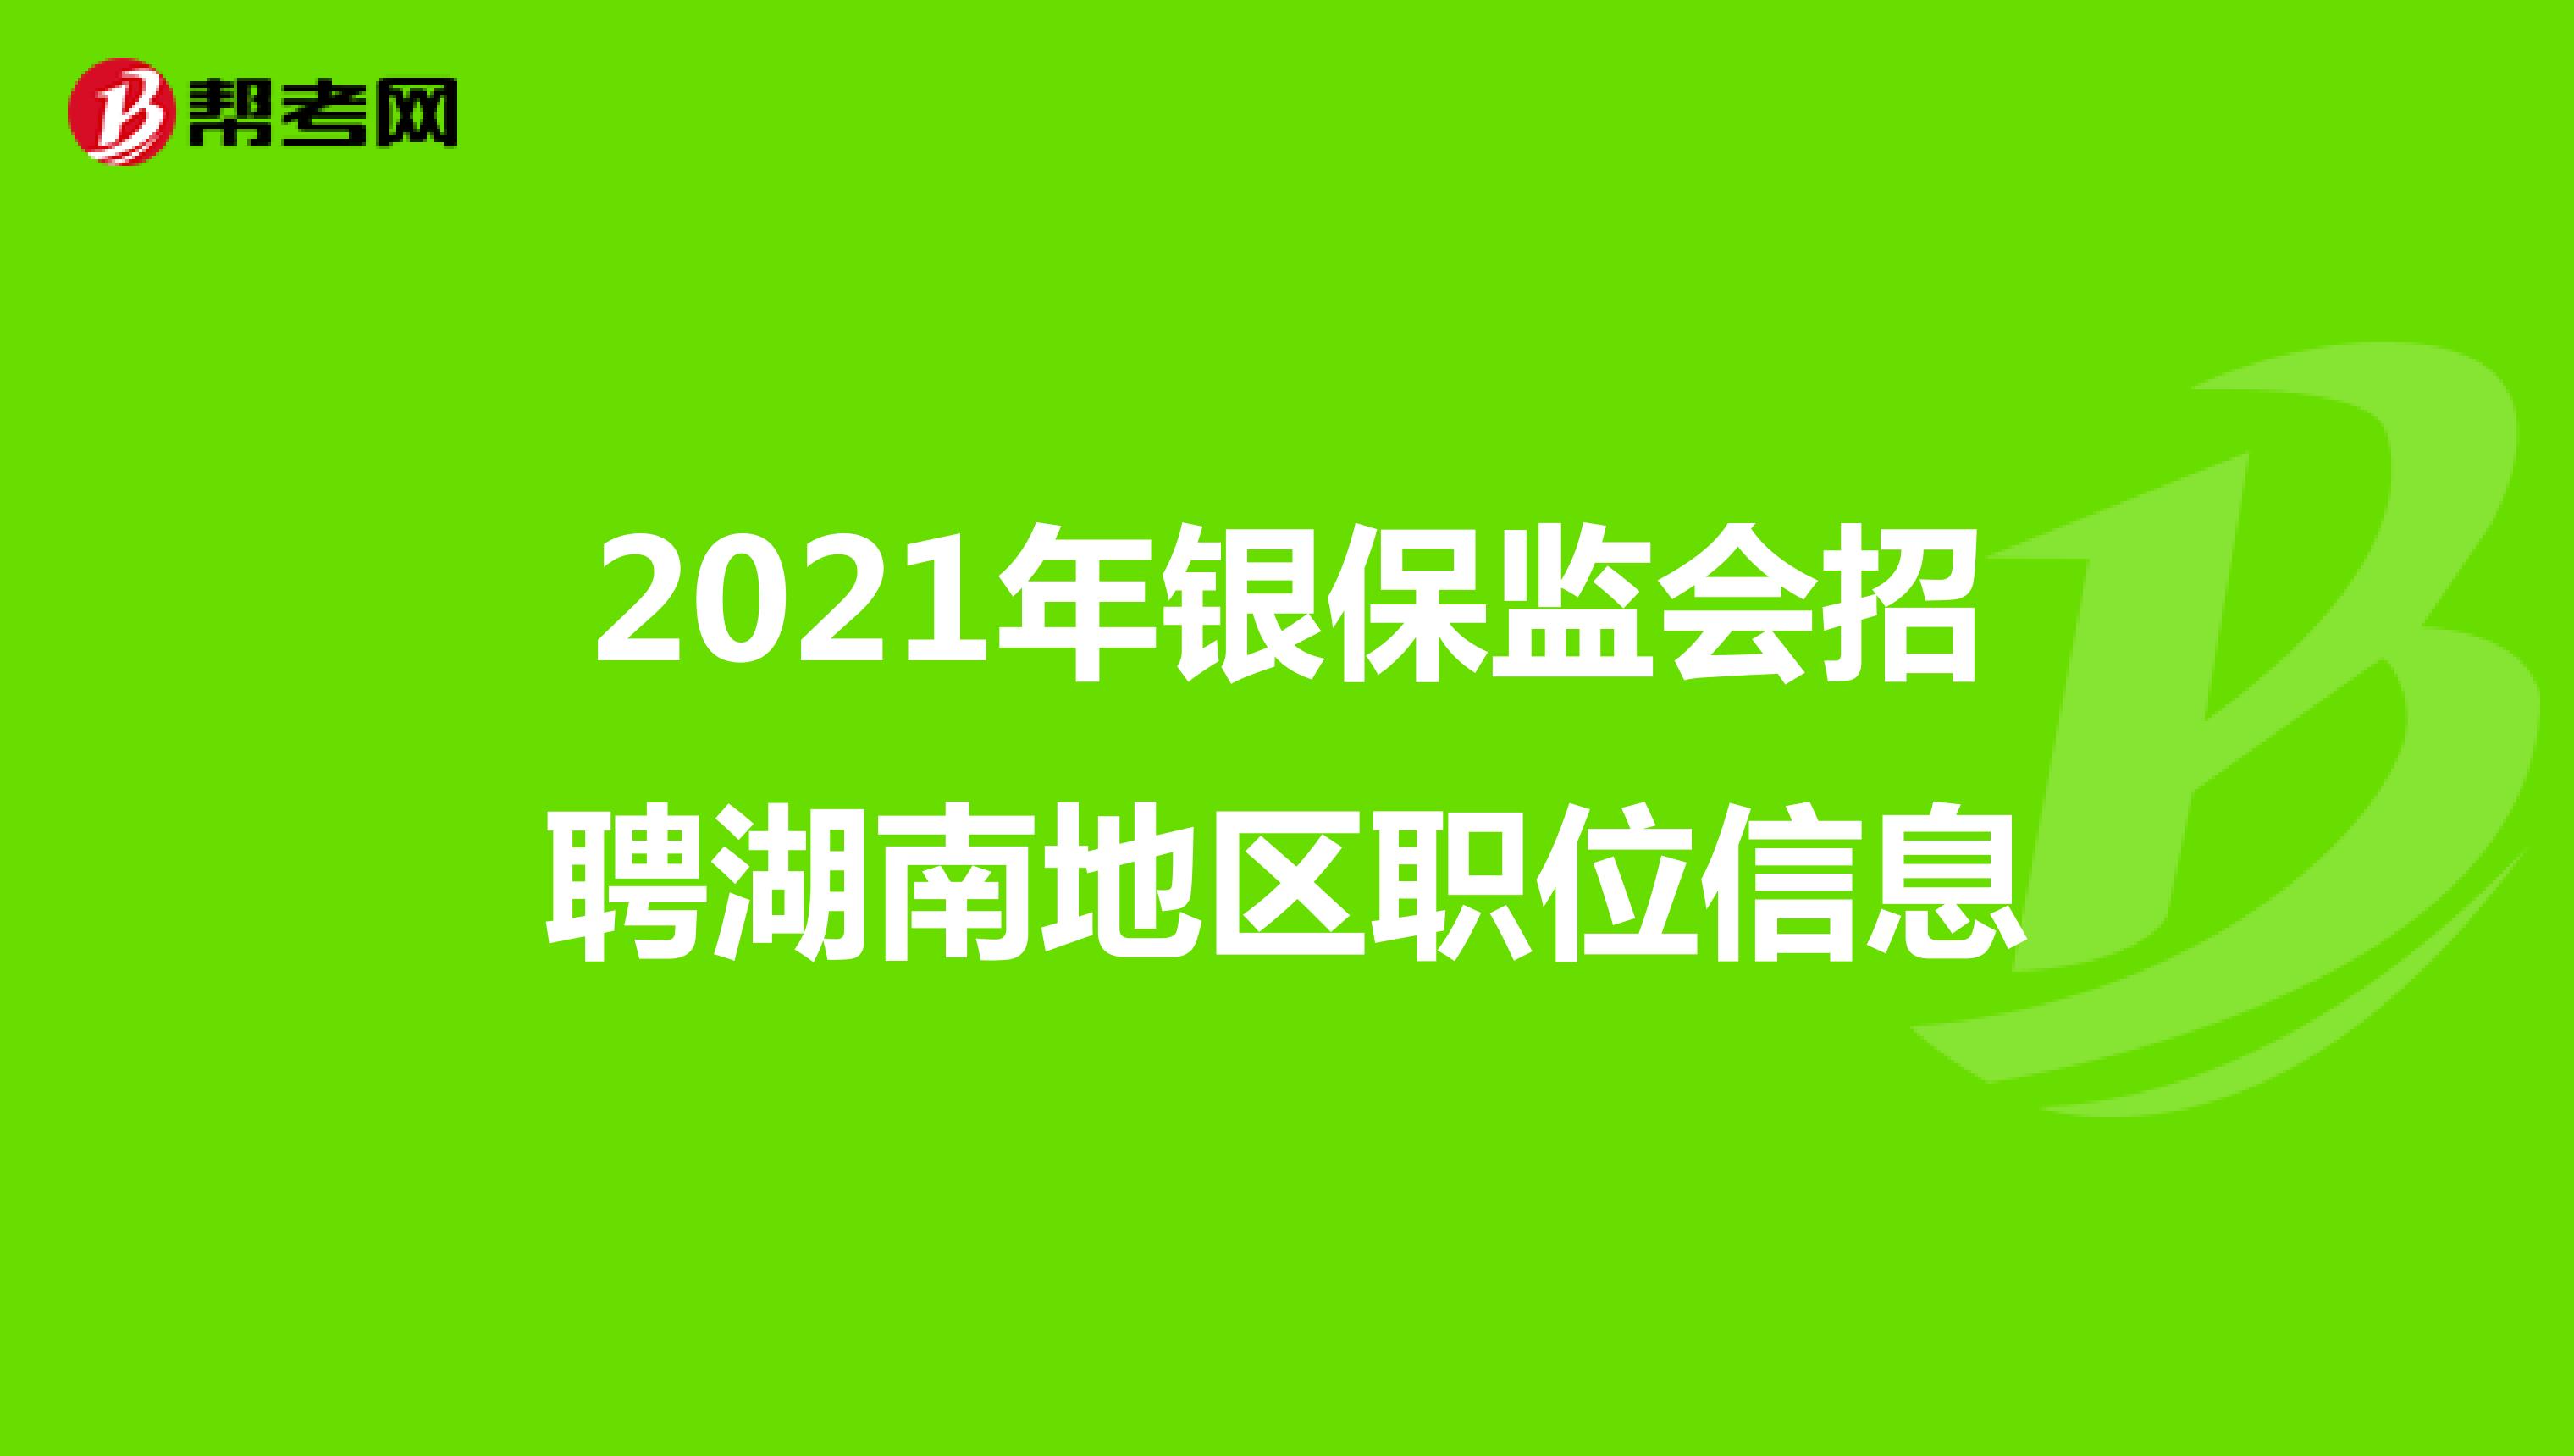 2021年银保监会招聘湖南地区职位信息